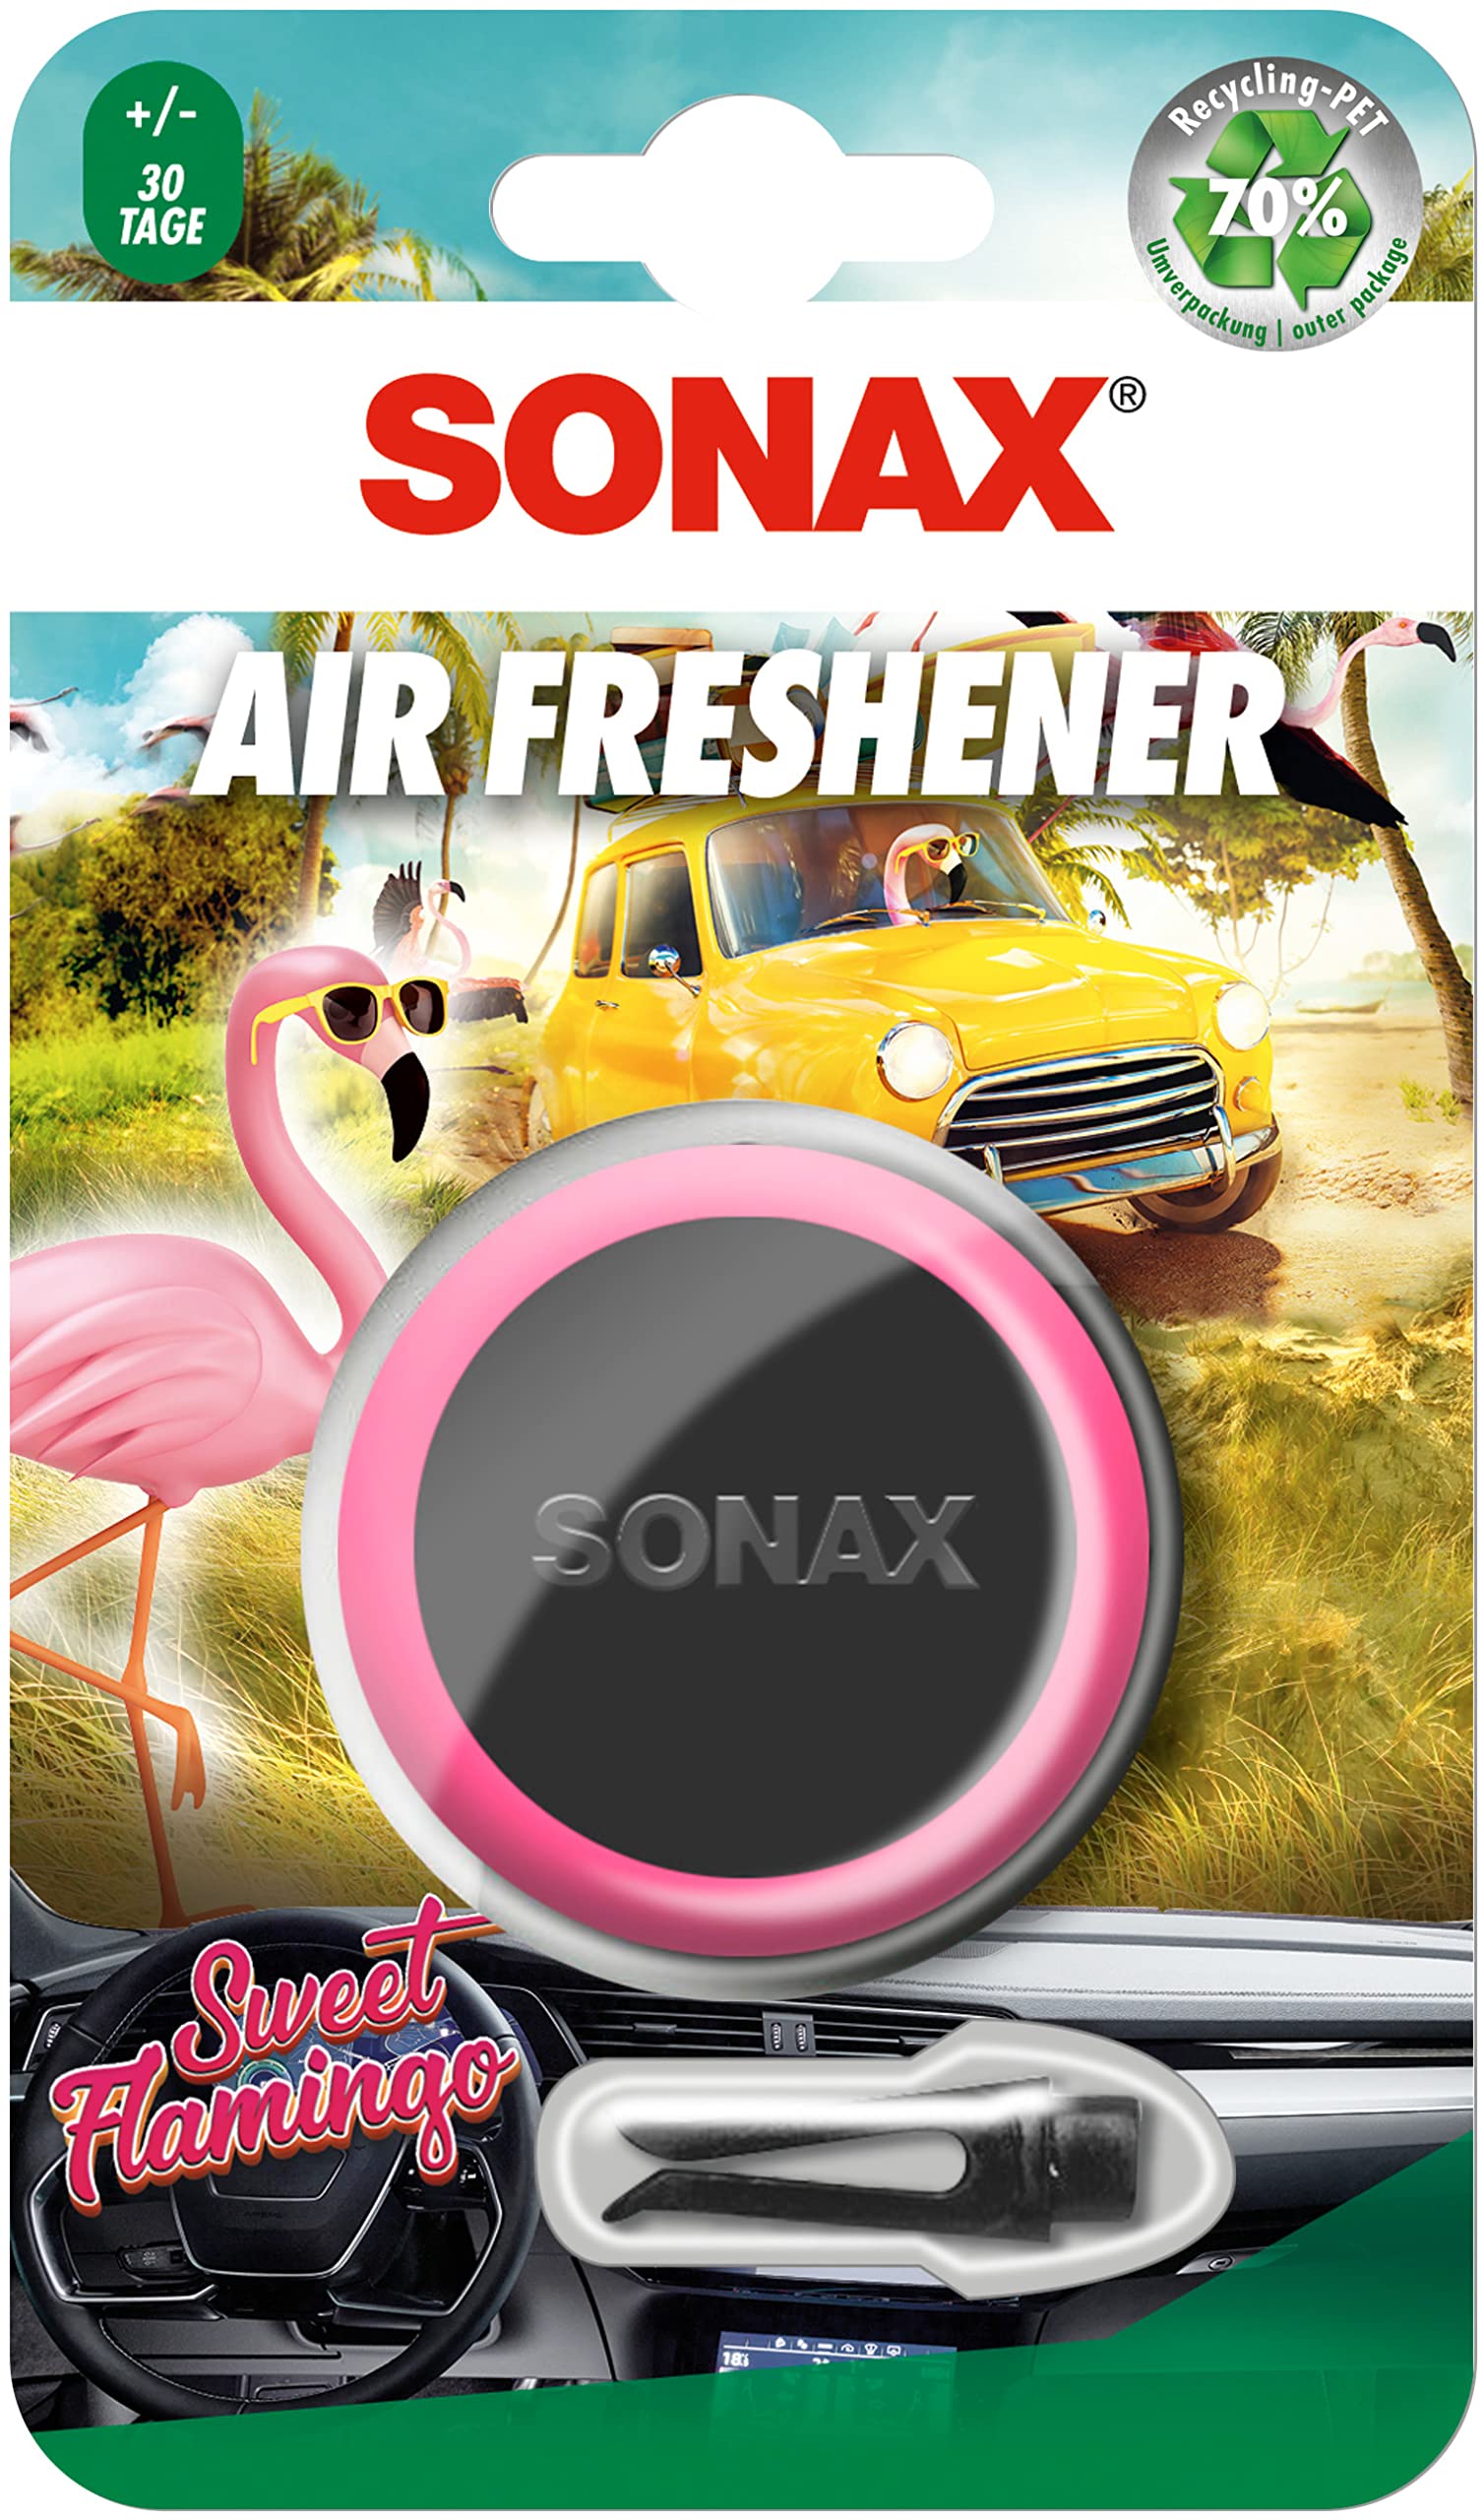 SONAX Air Freshener Sweet Flamingo (1 Stück) Lufterfrischer mit fruchtig-süßem Duft und langanhaltendem Dufterlebnis für den Fahrzeuginnenraum | Art-Nr. 03630410 von SONAX